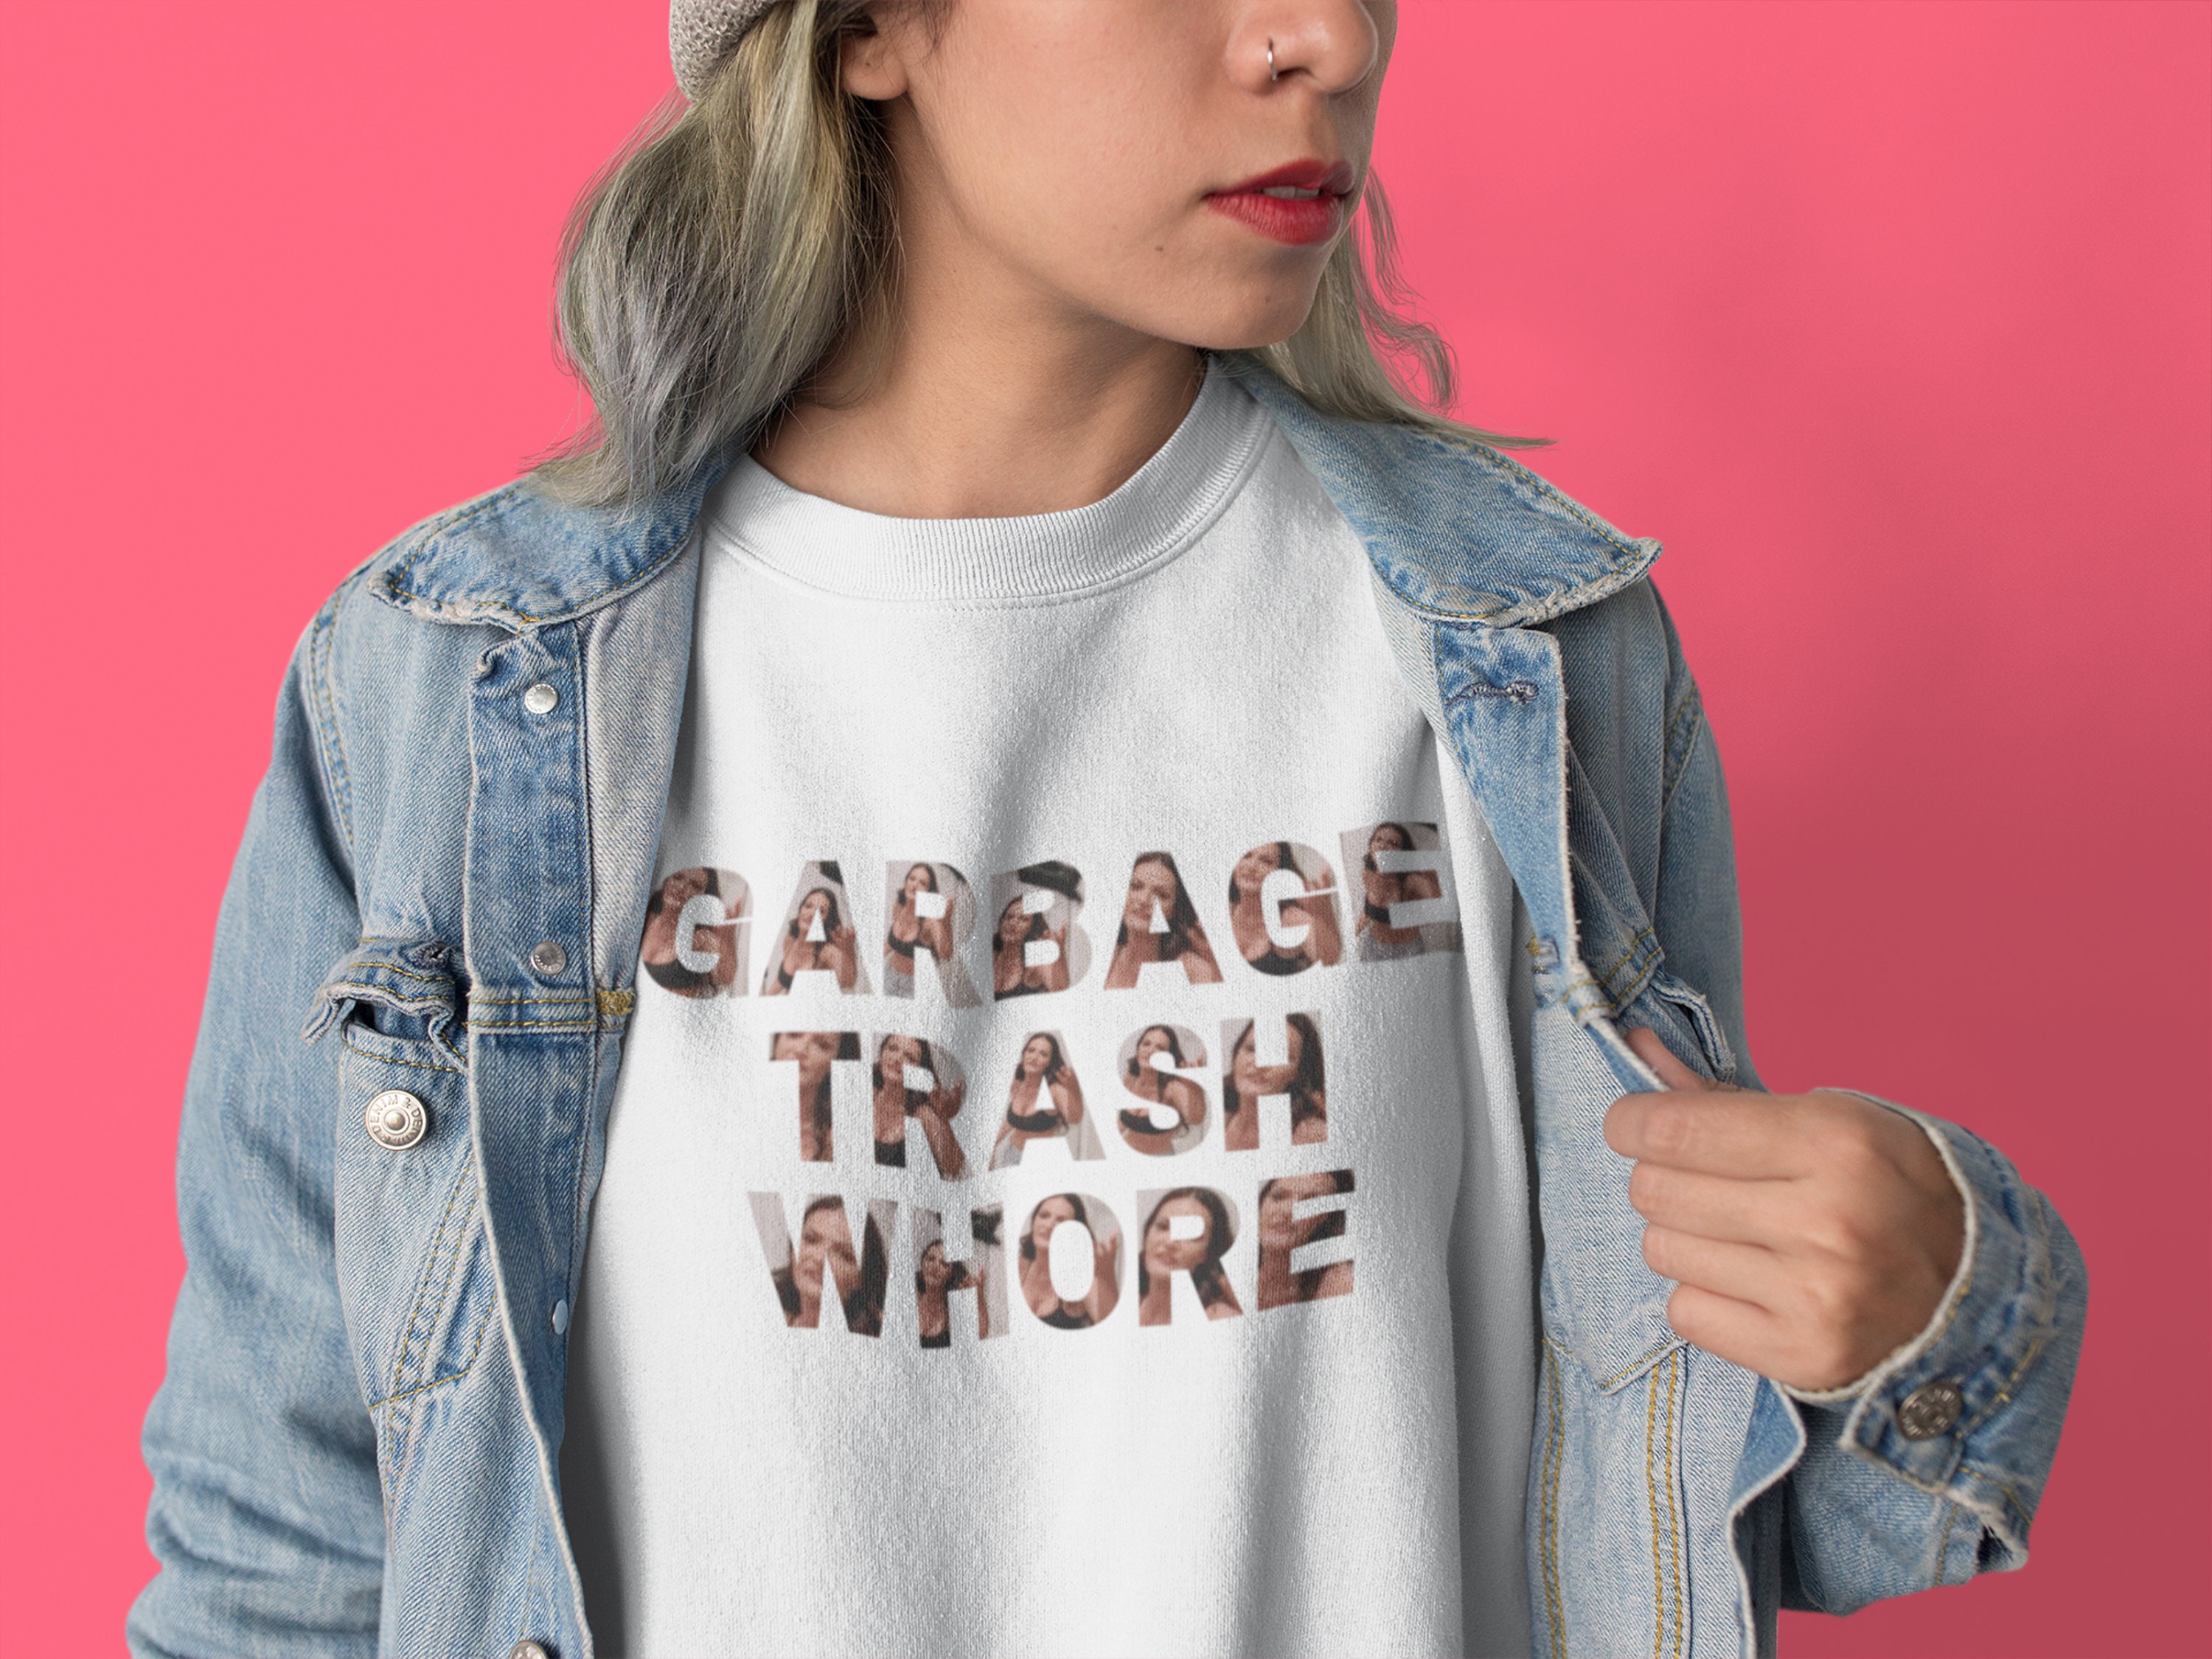 Real Housewives Lisa Garbage Trash Whore Sweatshirt